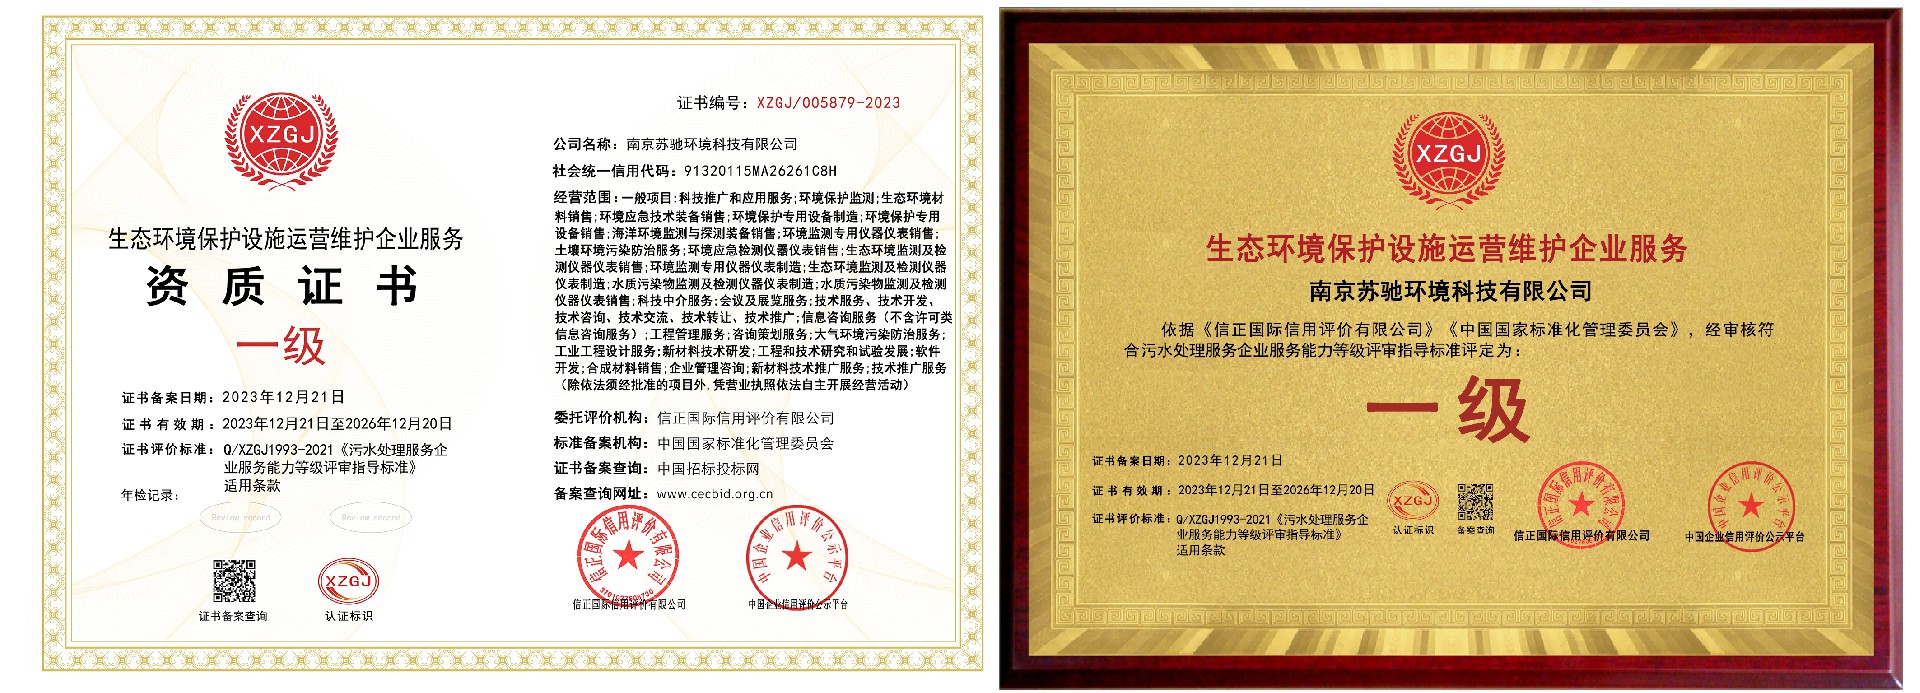 熱烈祝賀南京蘇馳環境科技有限公司榮獲《生態環境保護設施運營維護企業服務資質一級證書 》